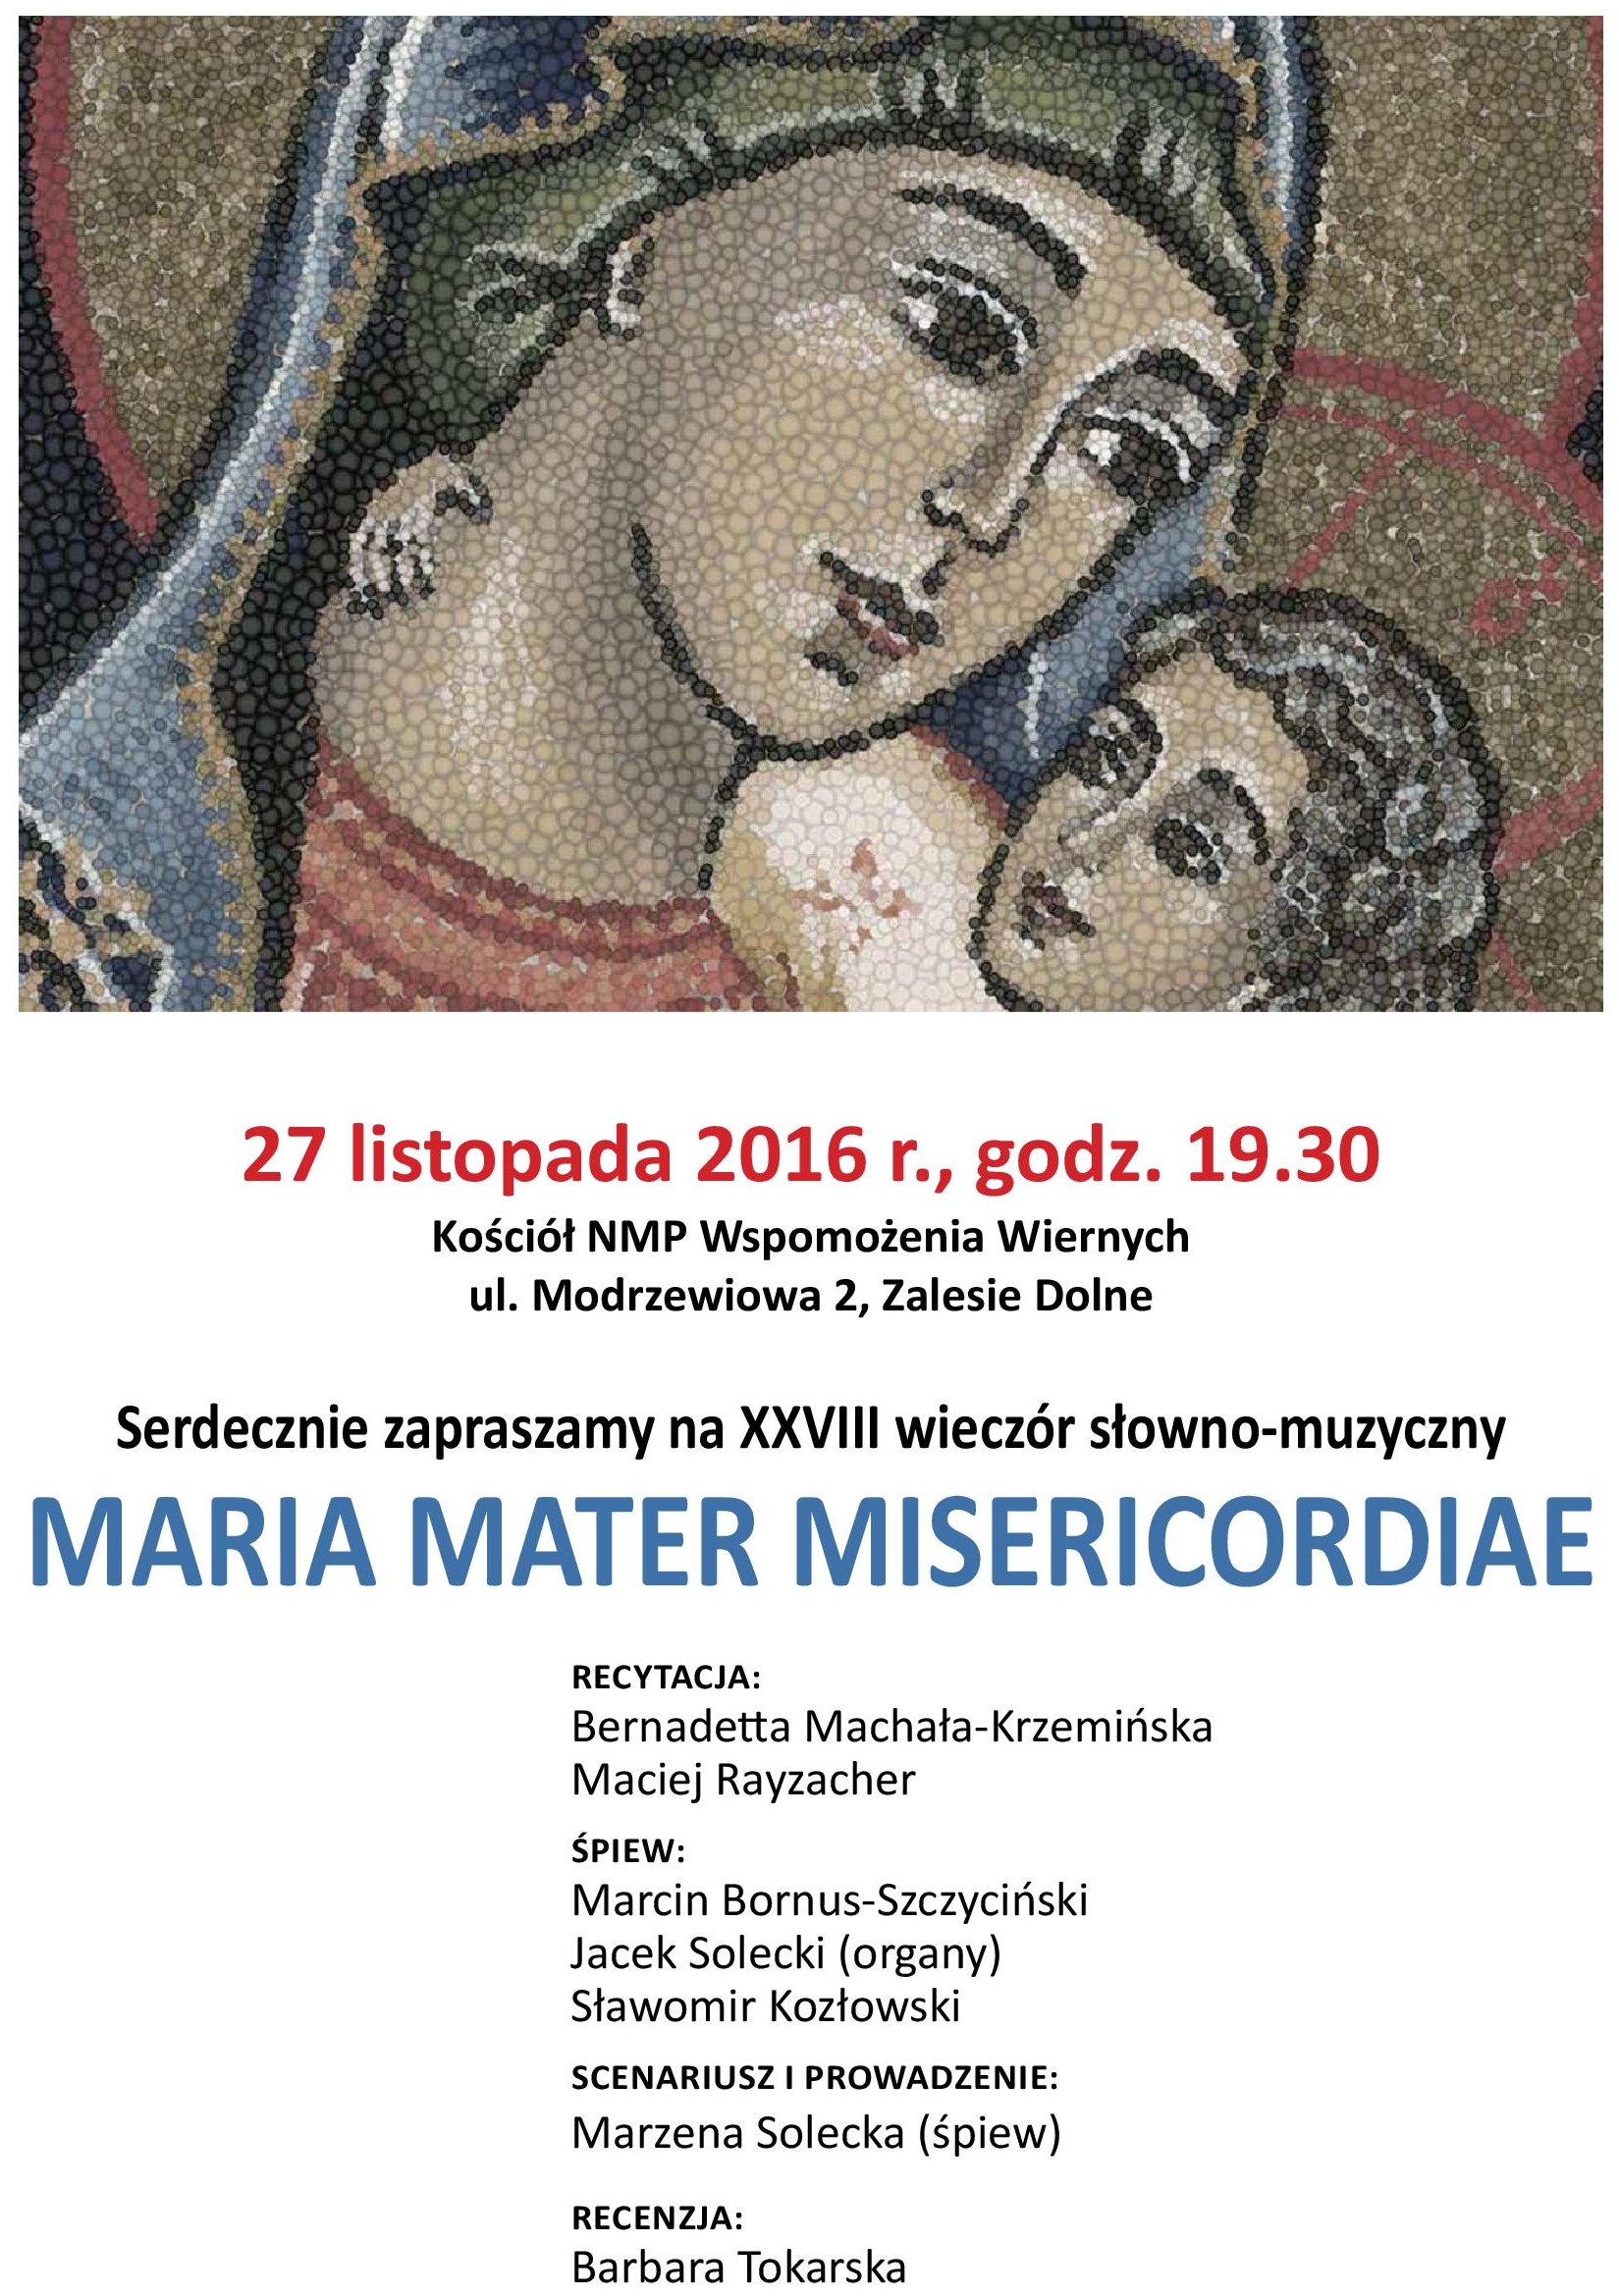 XXVIII WIECZÓR SŁOWNO-MUZYCZNY MARIA MATER MISERICORDIAE